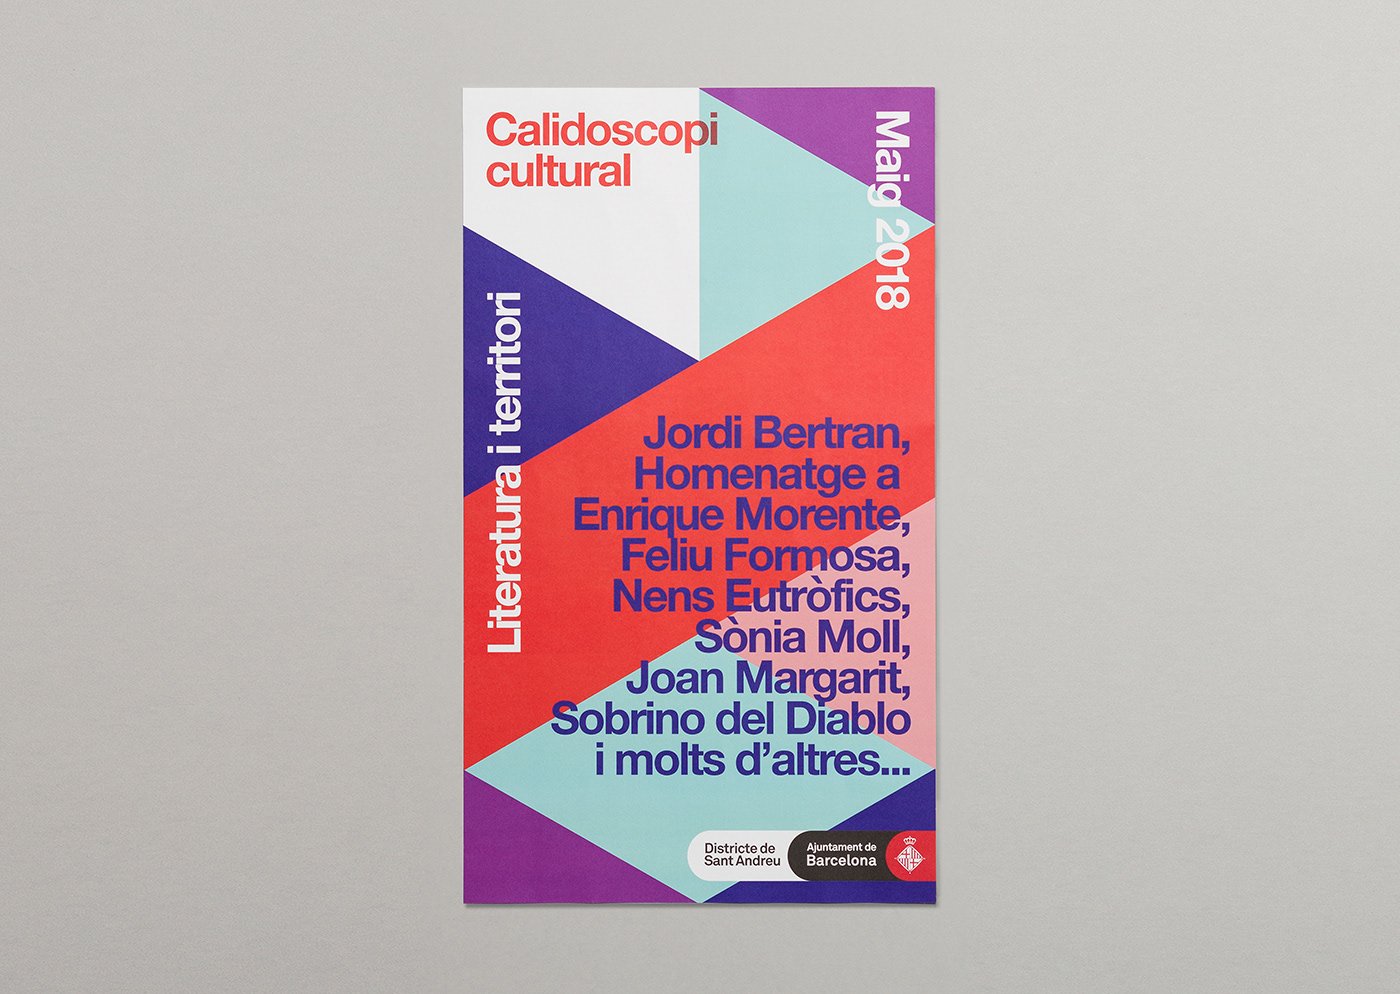 PFP Quim Pintó Montse Fabregat barcelona calidoscopi calidoscopi cultural identity poster print